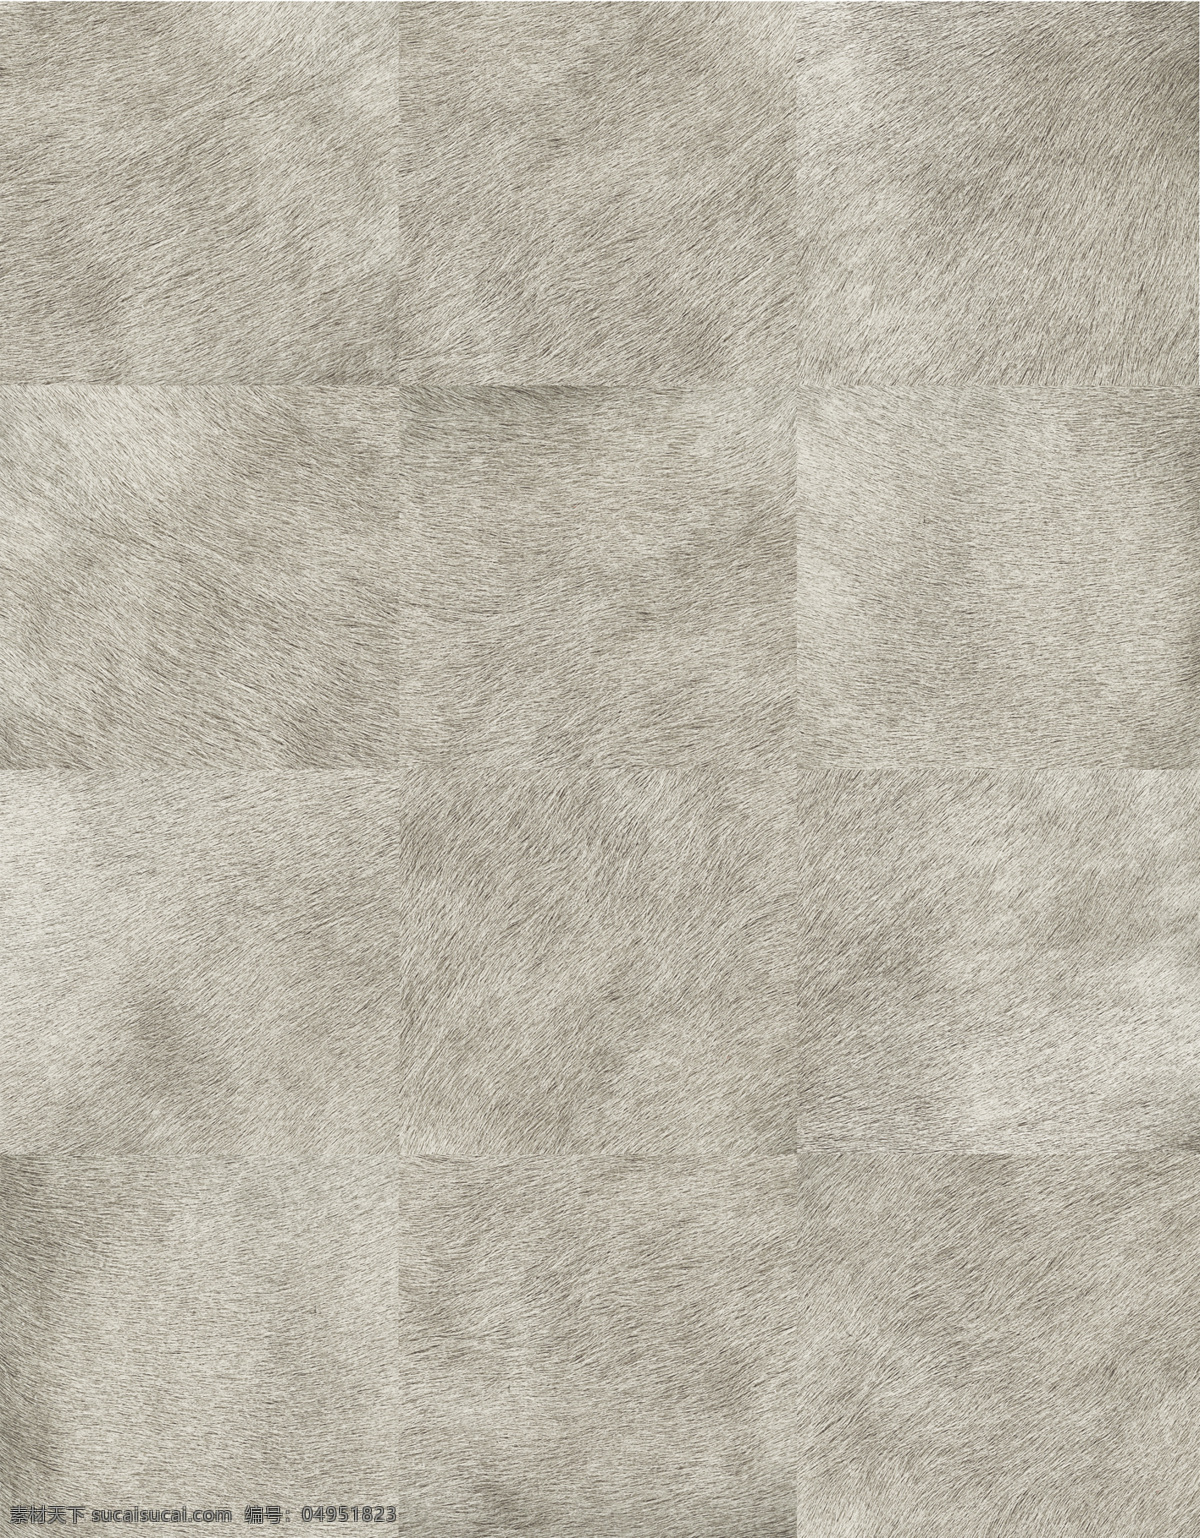 动物 皮质 地毯 贴图 3d材质贴图 灰色 系 材质 地毯贴图素材 3d